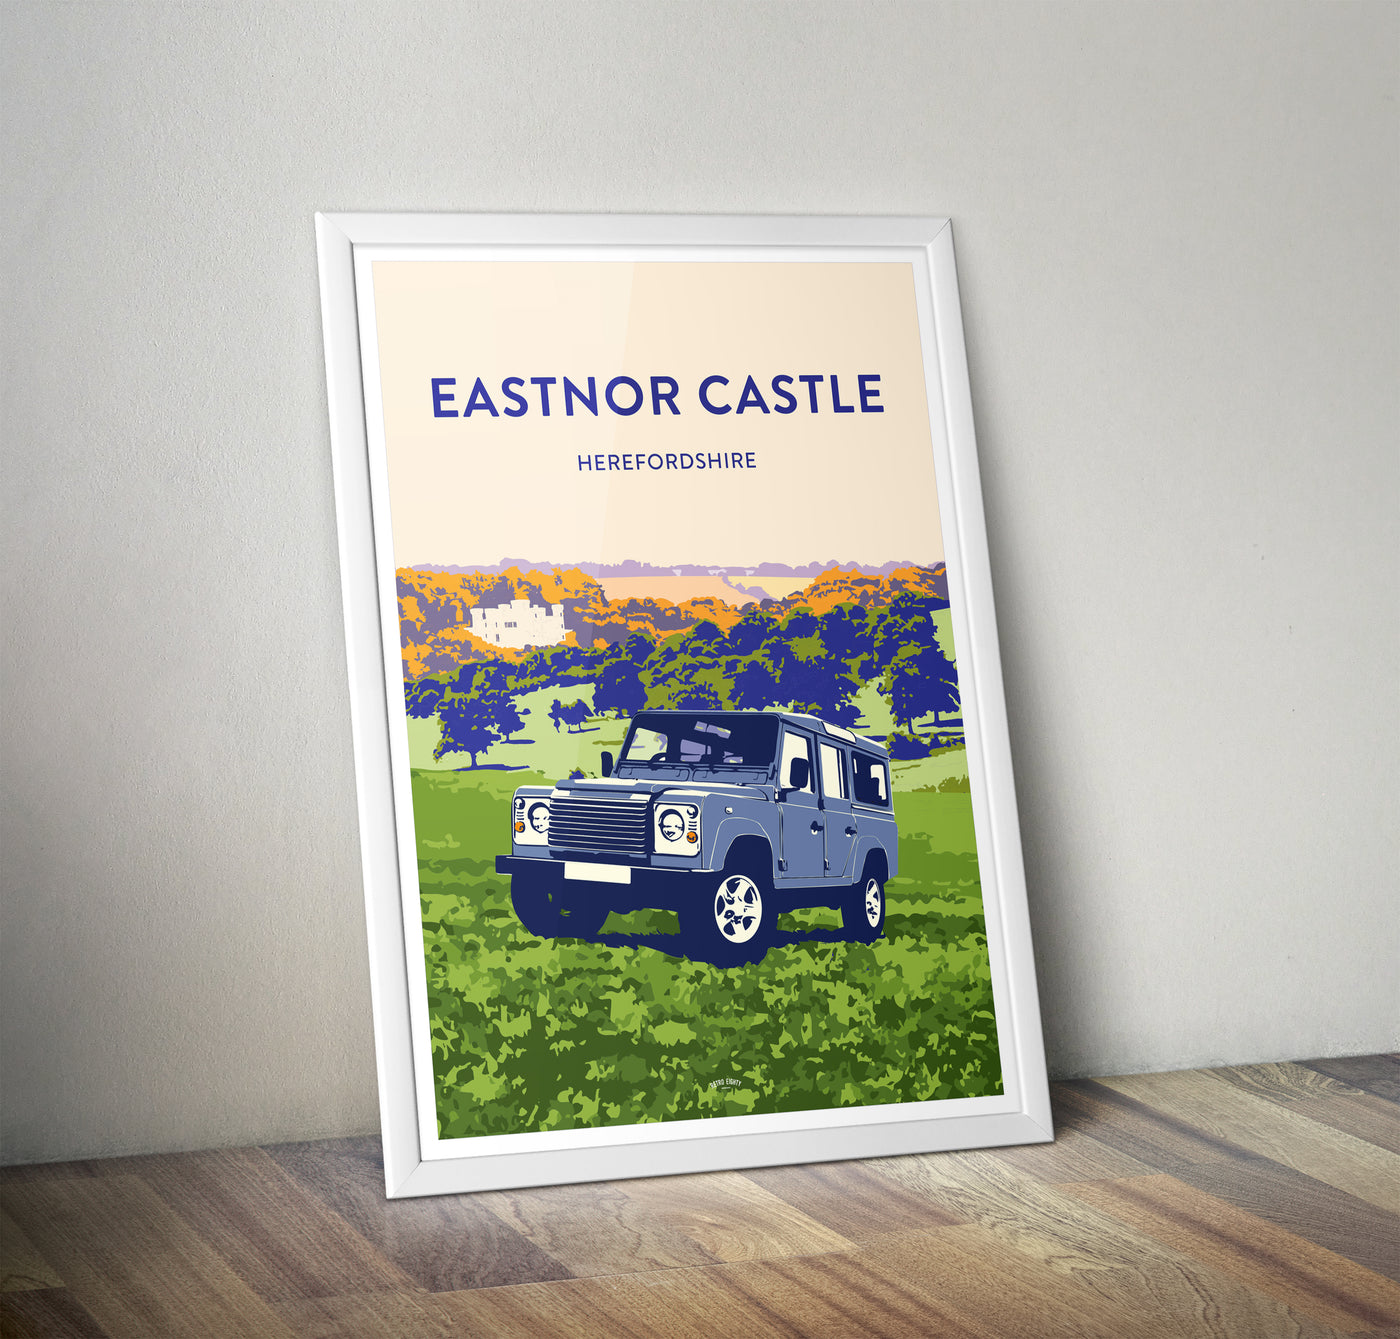 'Eastnor Castle' 110 prints